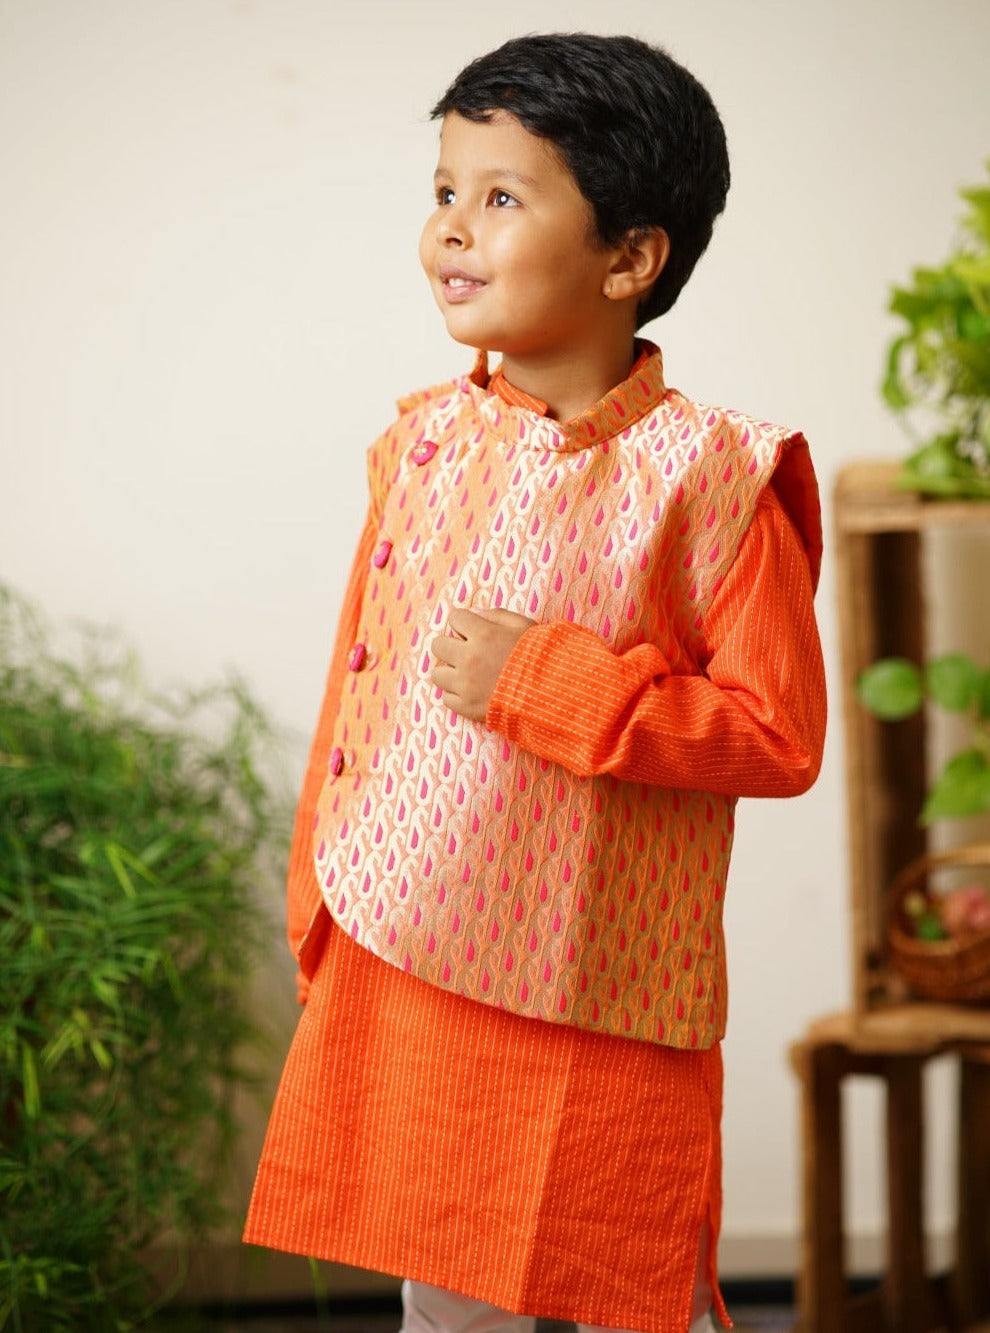 orange floral traditional ethnic brocade printed silk cotton kurta pyjama salwar suit pajama churidar set sherwani jacket for baby boy kids 